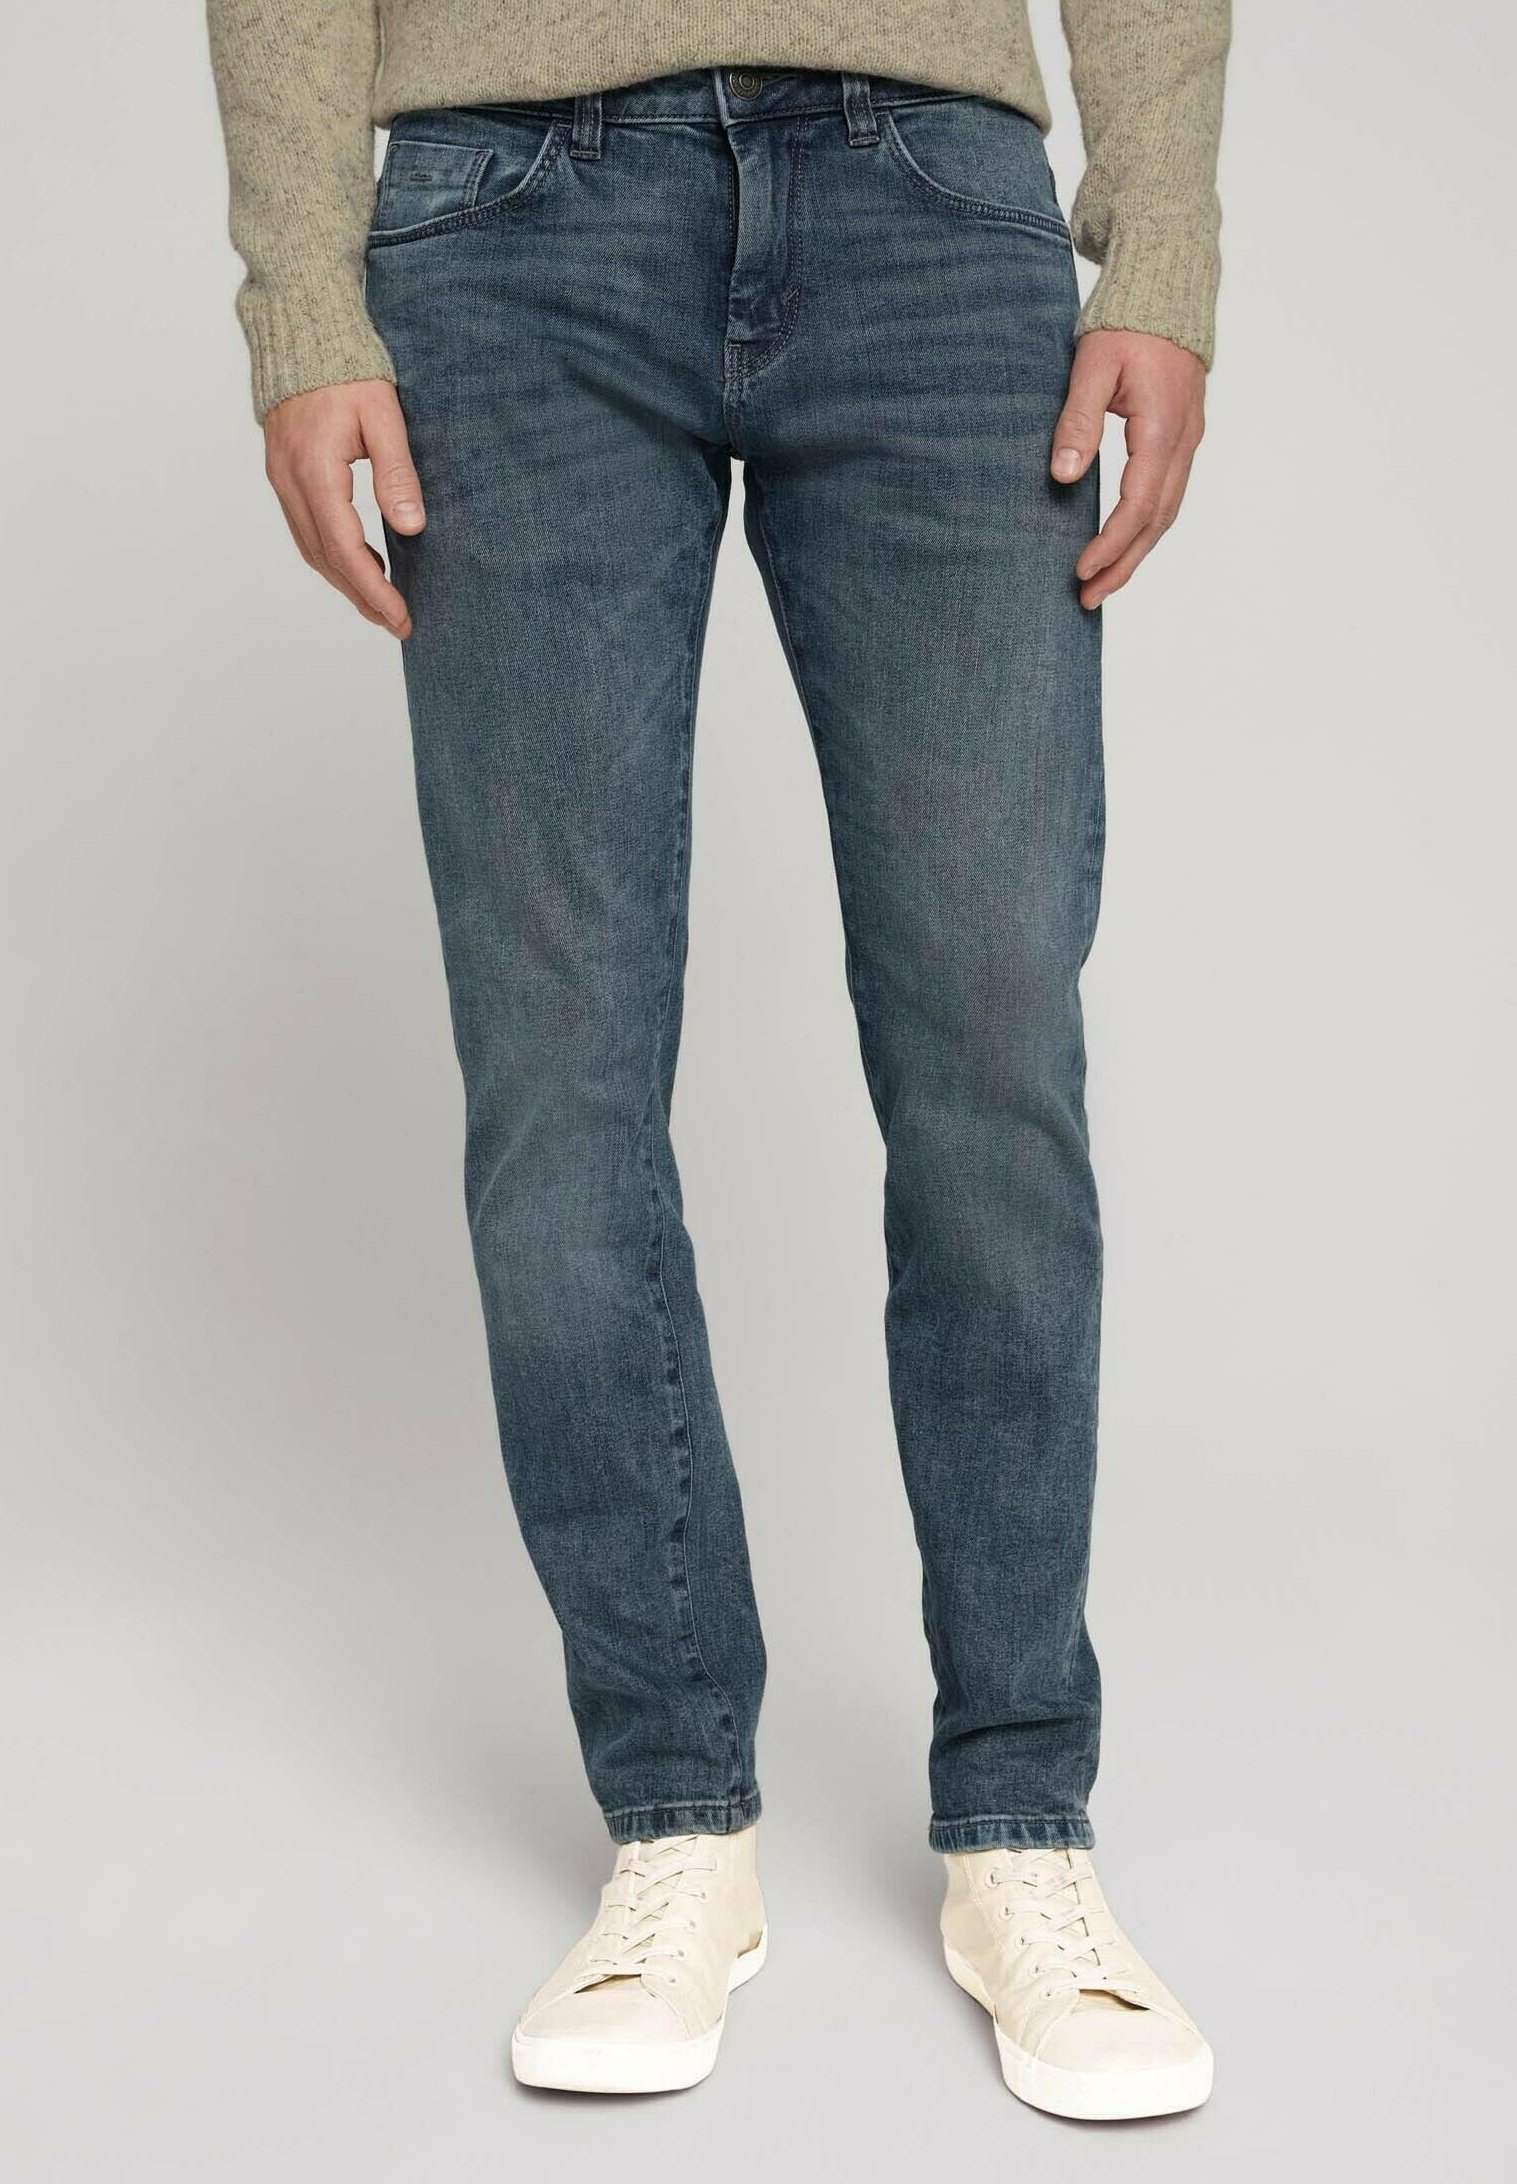 TOM TAILOR TROY SLIM - Jeans Slim Fit - used light stone blue denim/hellblau-meliert